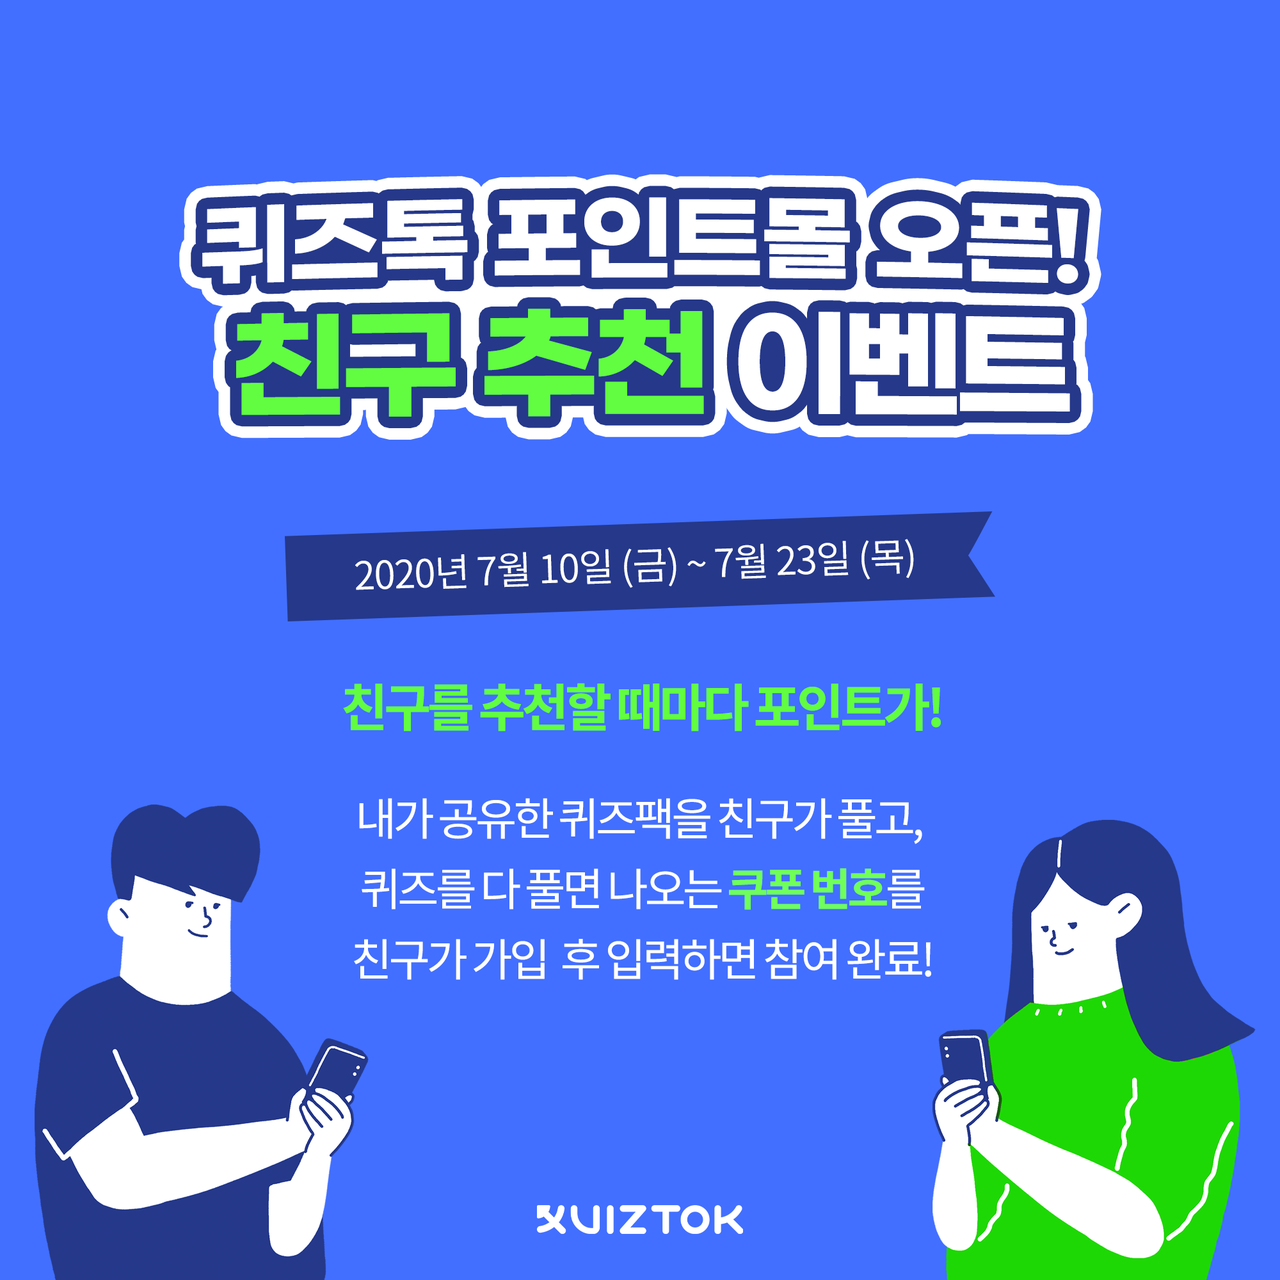 퀴즈톡 포인트몰 오픈 기념 '친구 추천 이벤트'